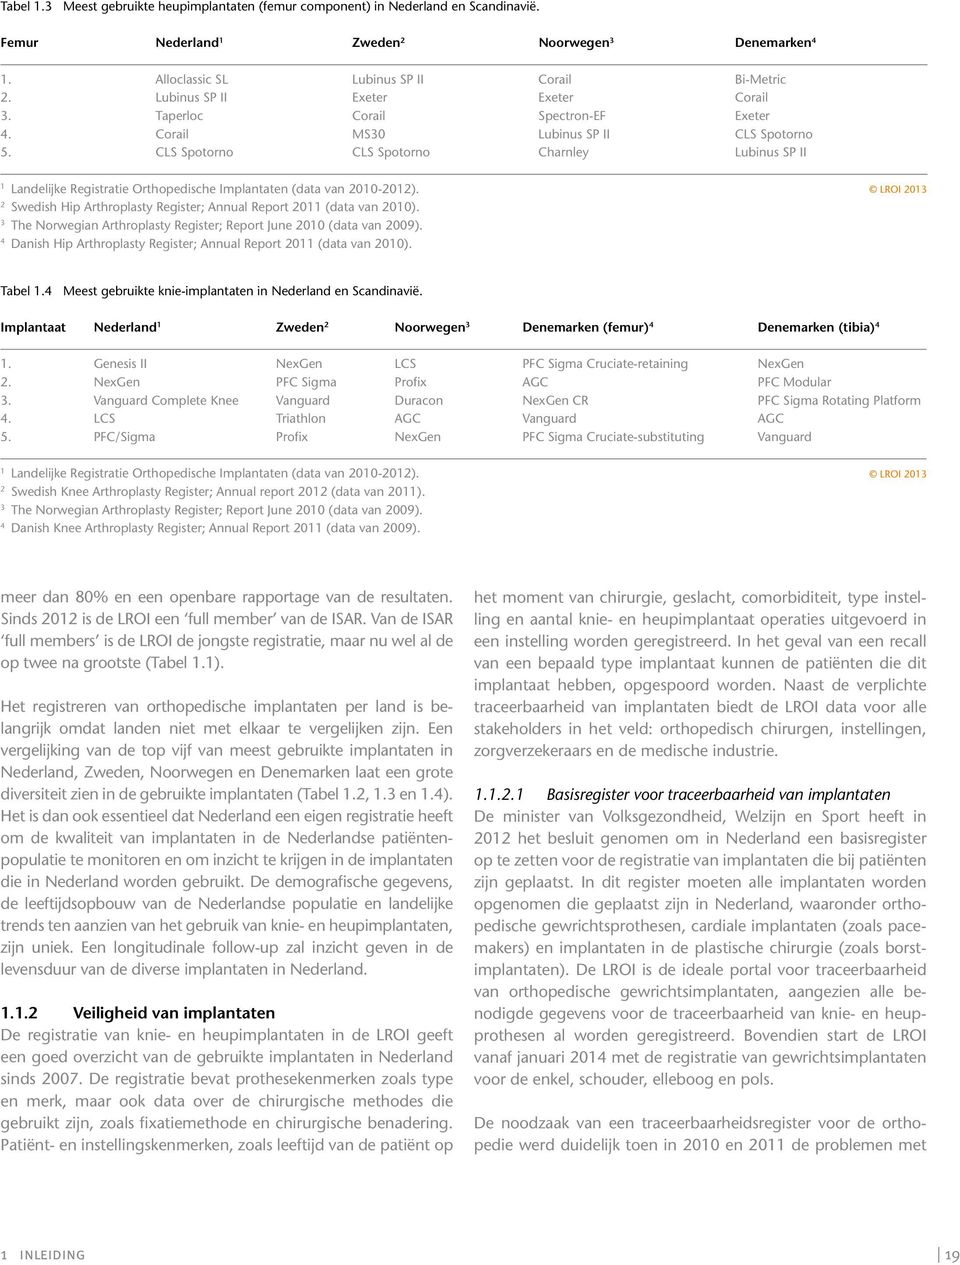 CLS Spotorno CLS Spotorno Charnley Lubinus SP II 1 Landelijke Registratie Orthopedische Implantaten (data van 2010-2012). 2 Swedish Hip Arthroplasty Register; Annual Report 2011 (data van 2010).